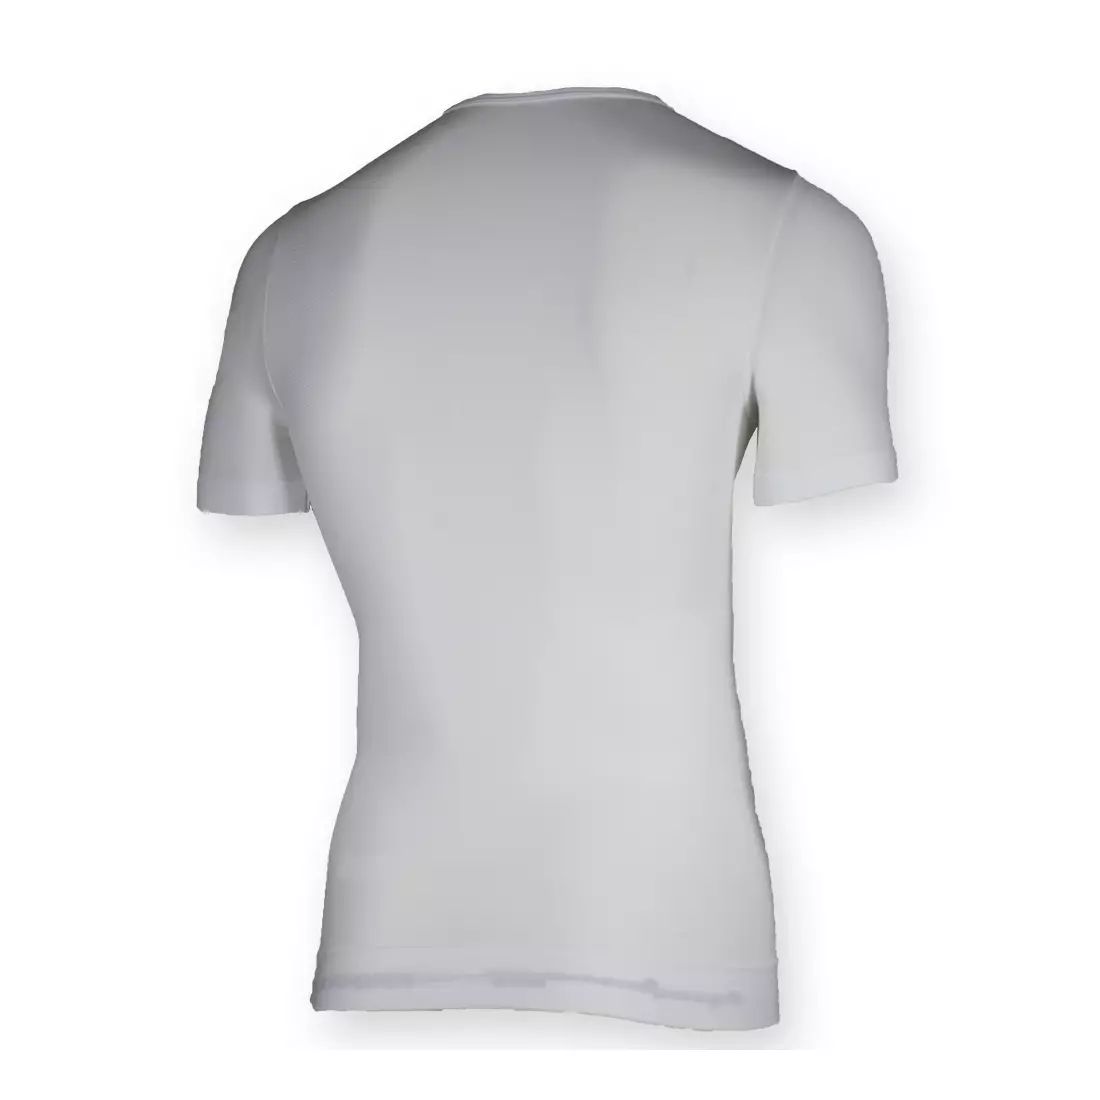 ROGELLI CHASE 070.003 - lenjerie termică - tricou bărbați - culoare: alb